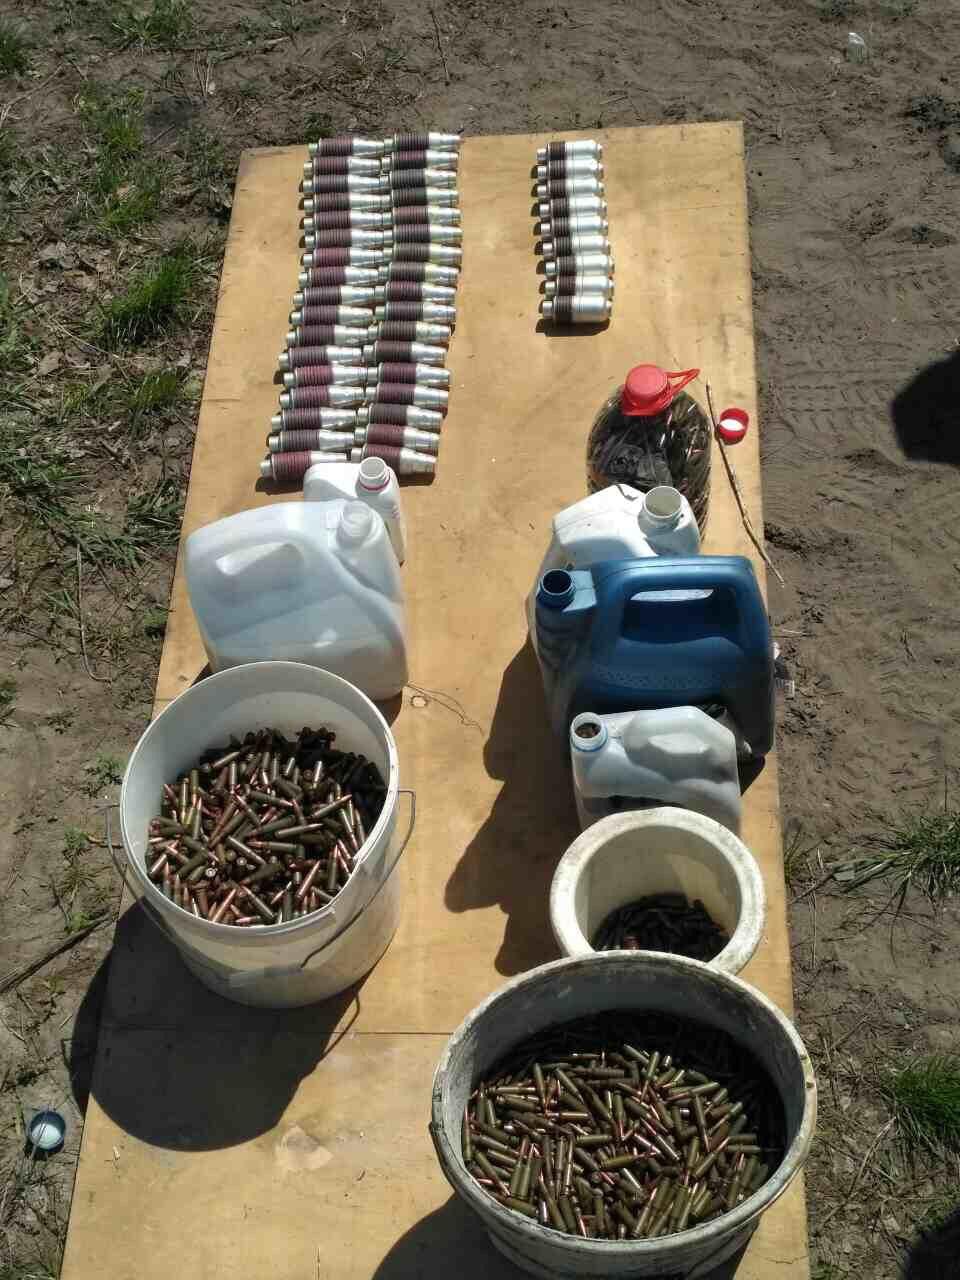 Боеприпасы и оружие, обнаруженные во время обысков по месту жительства фигурантов производства